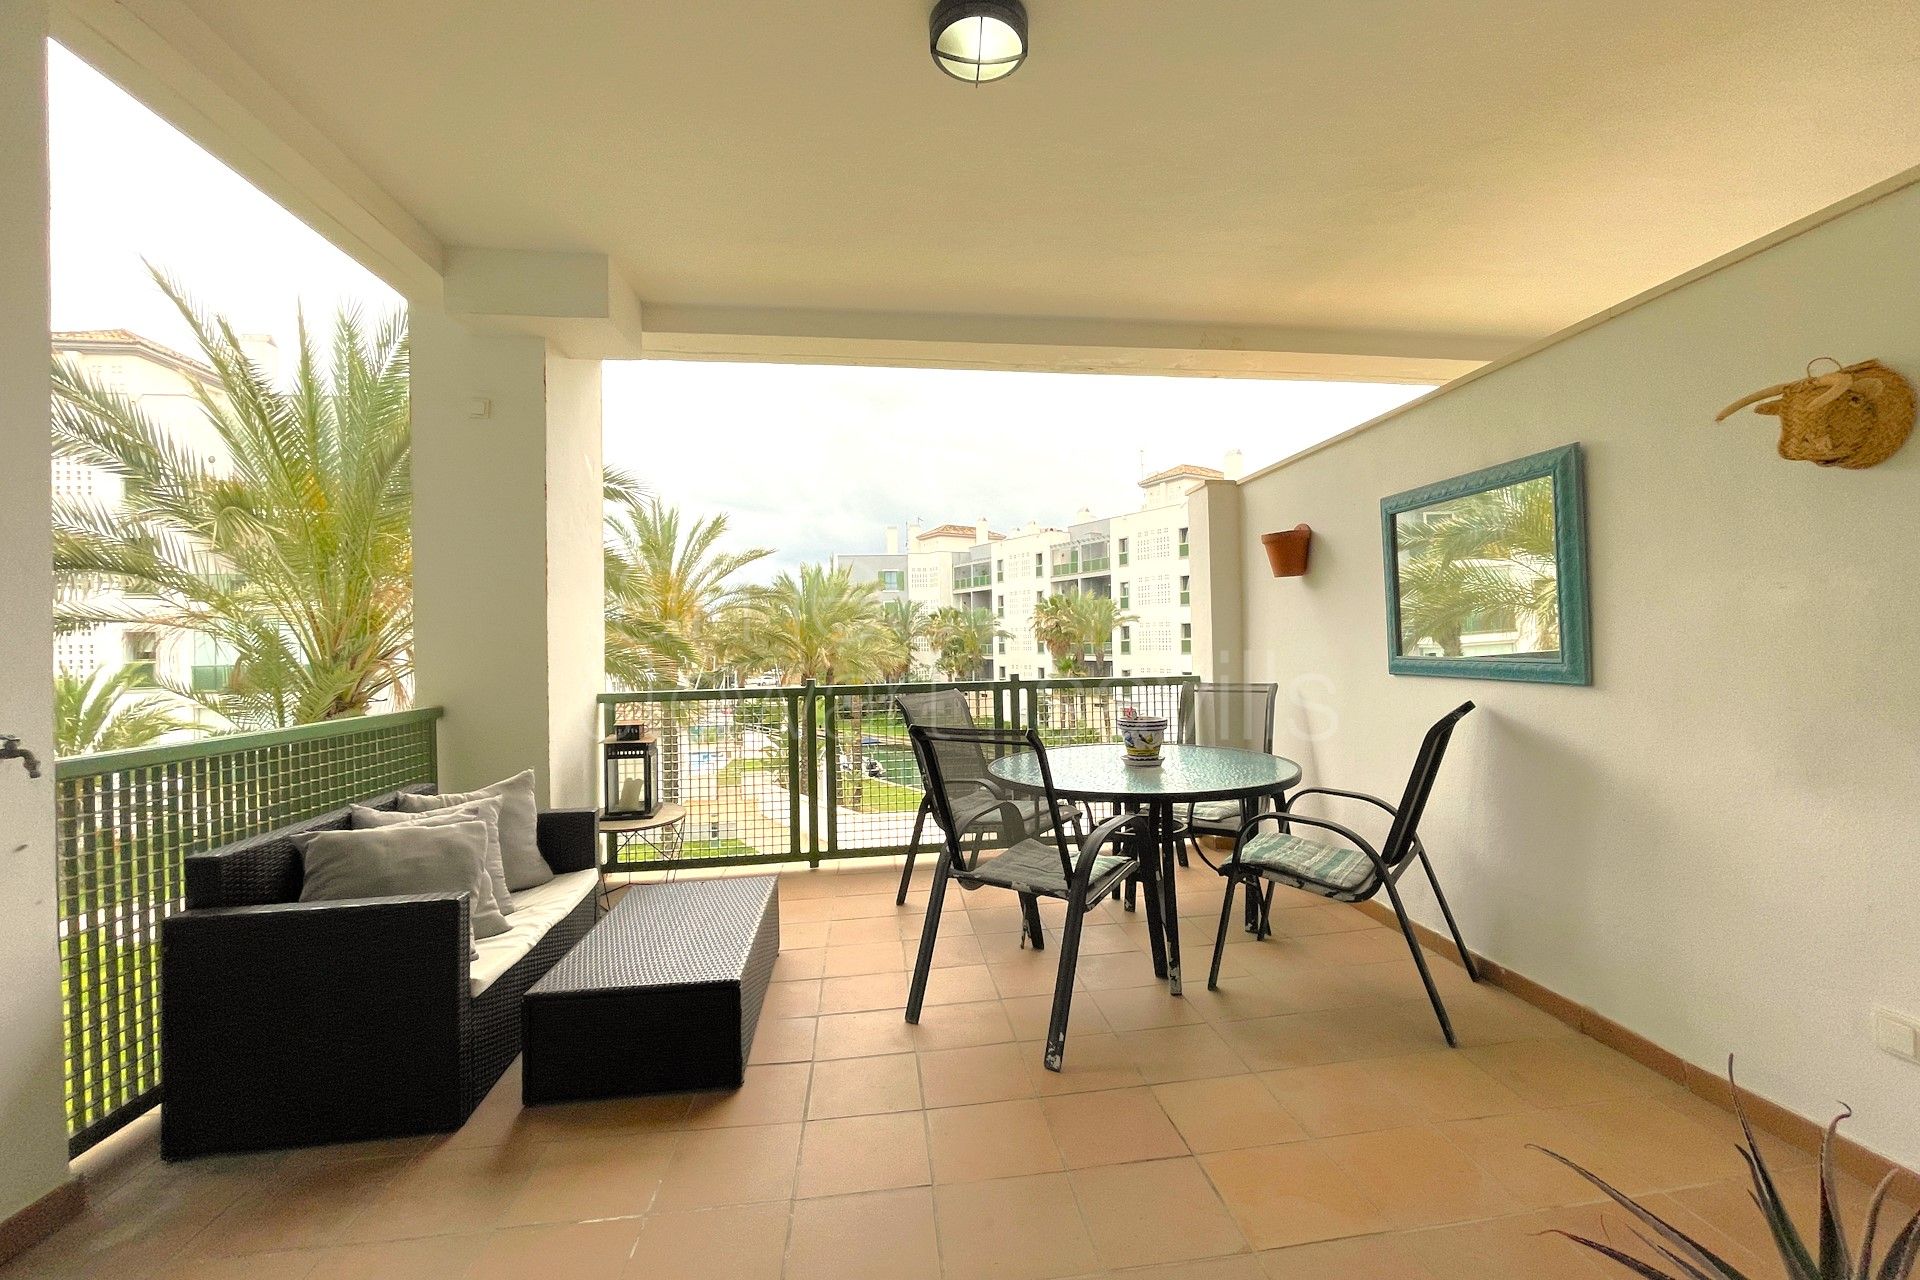 2 Bedroom apartment with views to La Marina de Sotogrande in Jungla del Loro